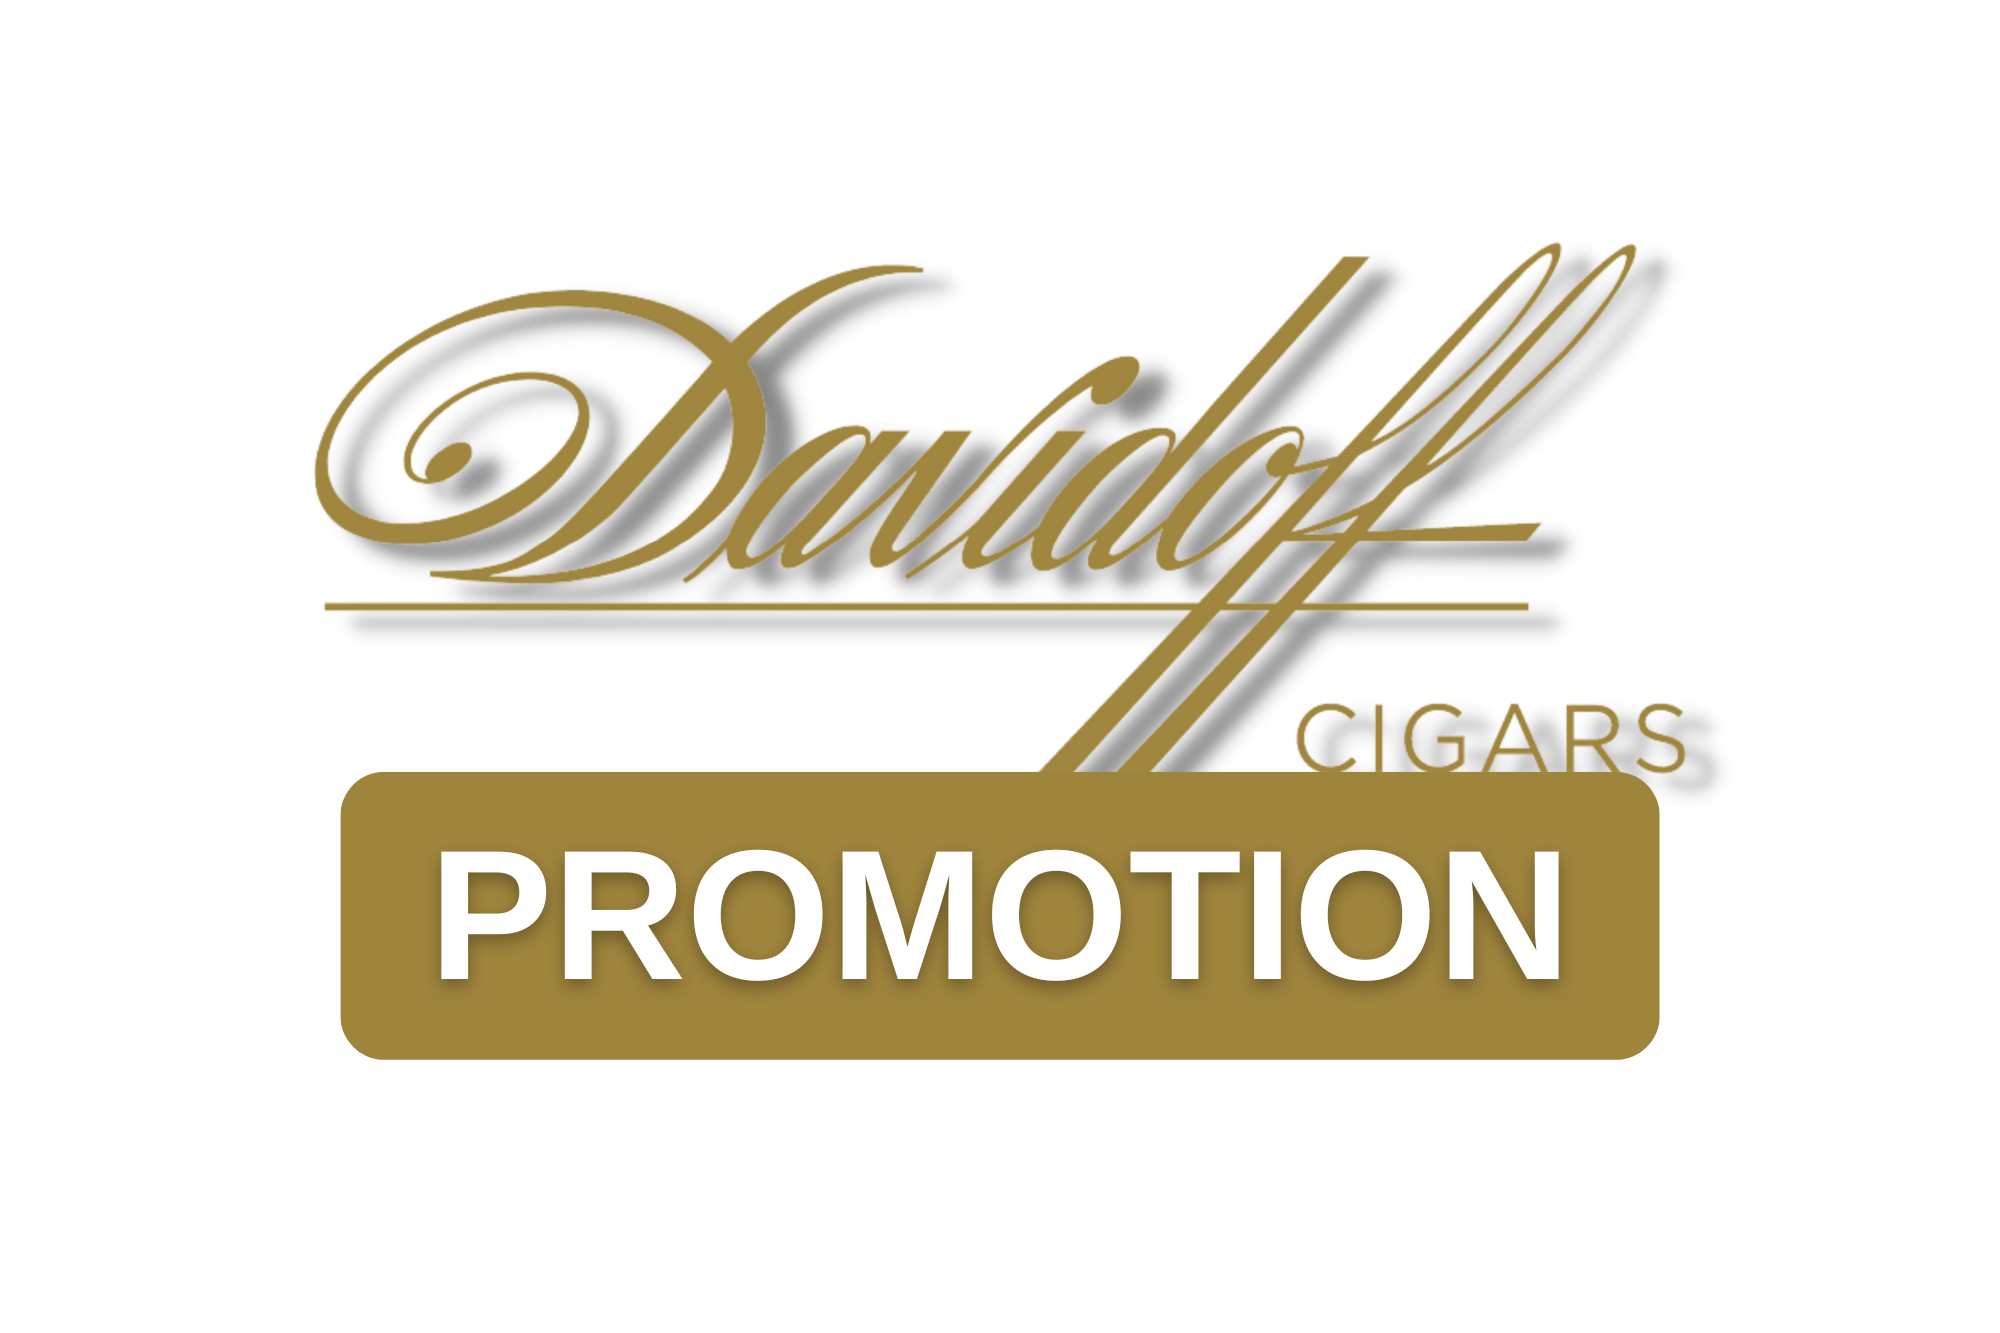 Davidoff. Davidoff Cigars. Davidoff Promotion. Thousand Oaks. Club Humidor. Gift with Purchase.